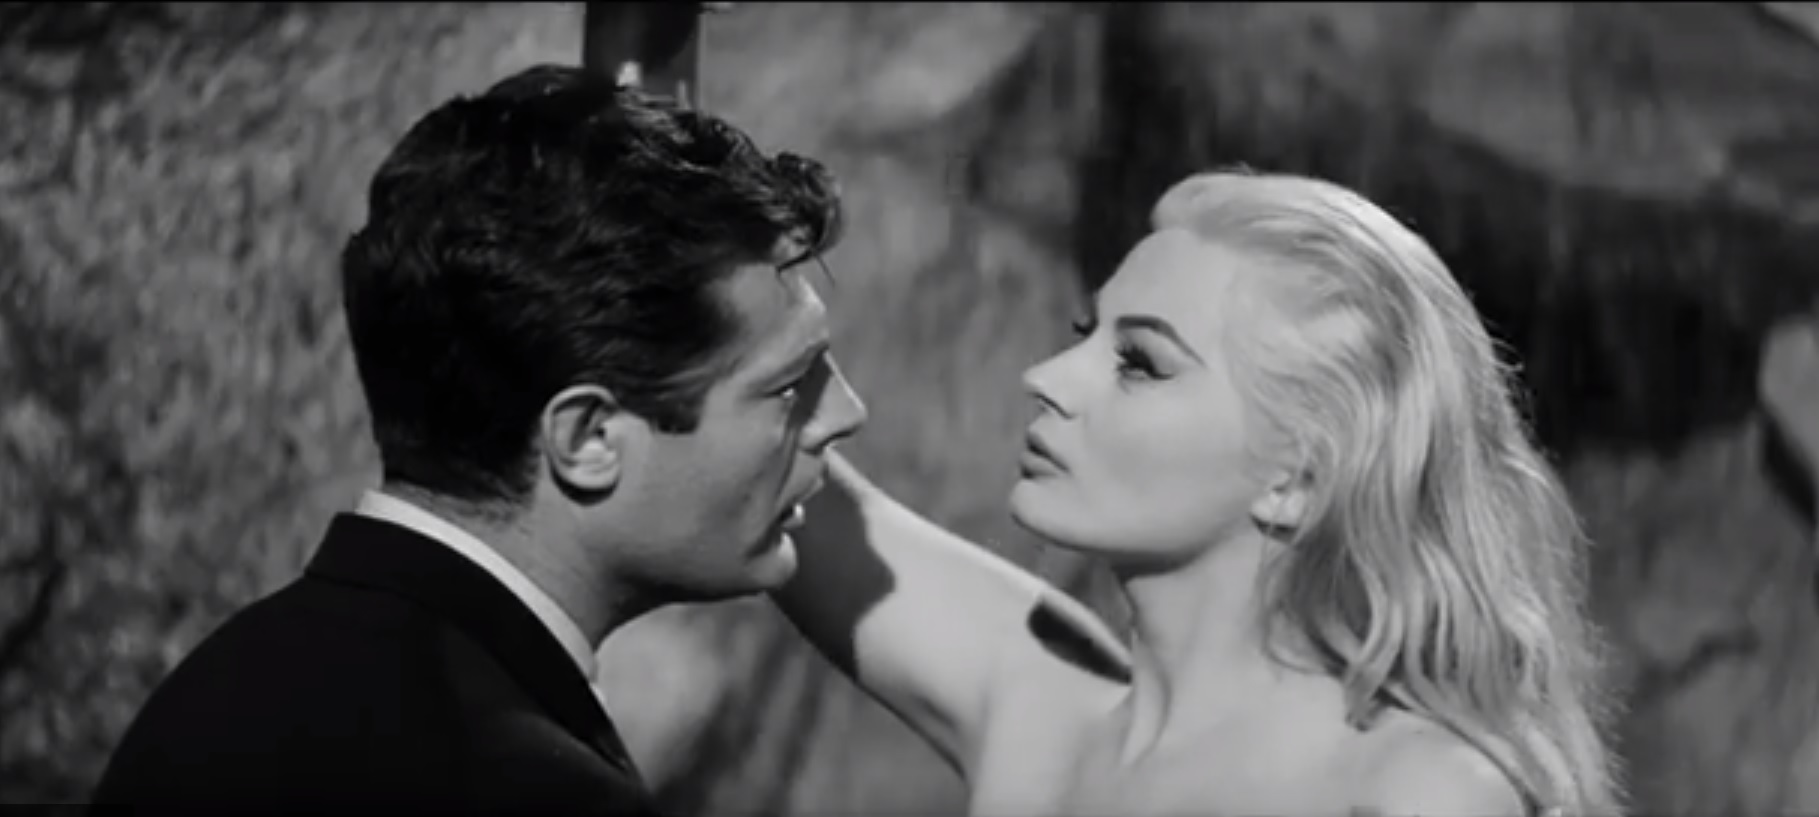 Cien años del nacimiento de Federico Fellini